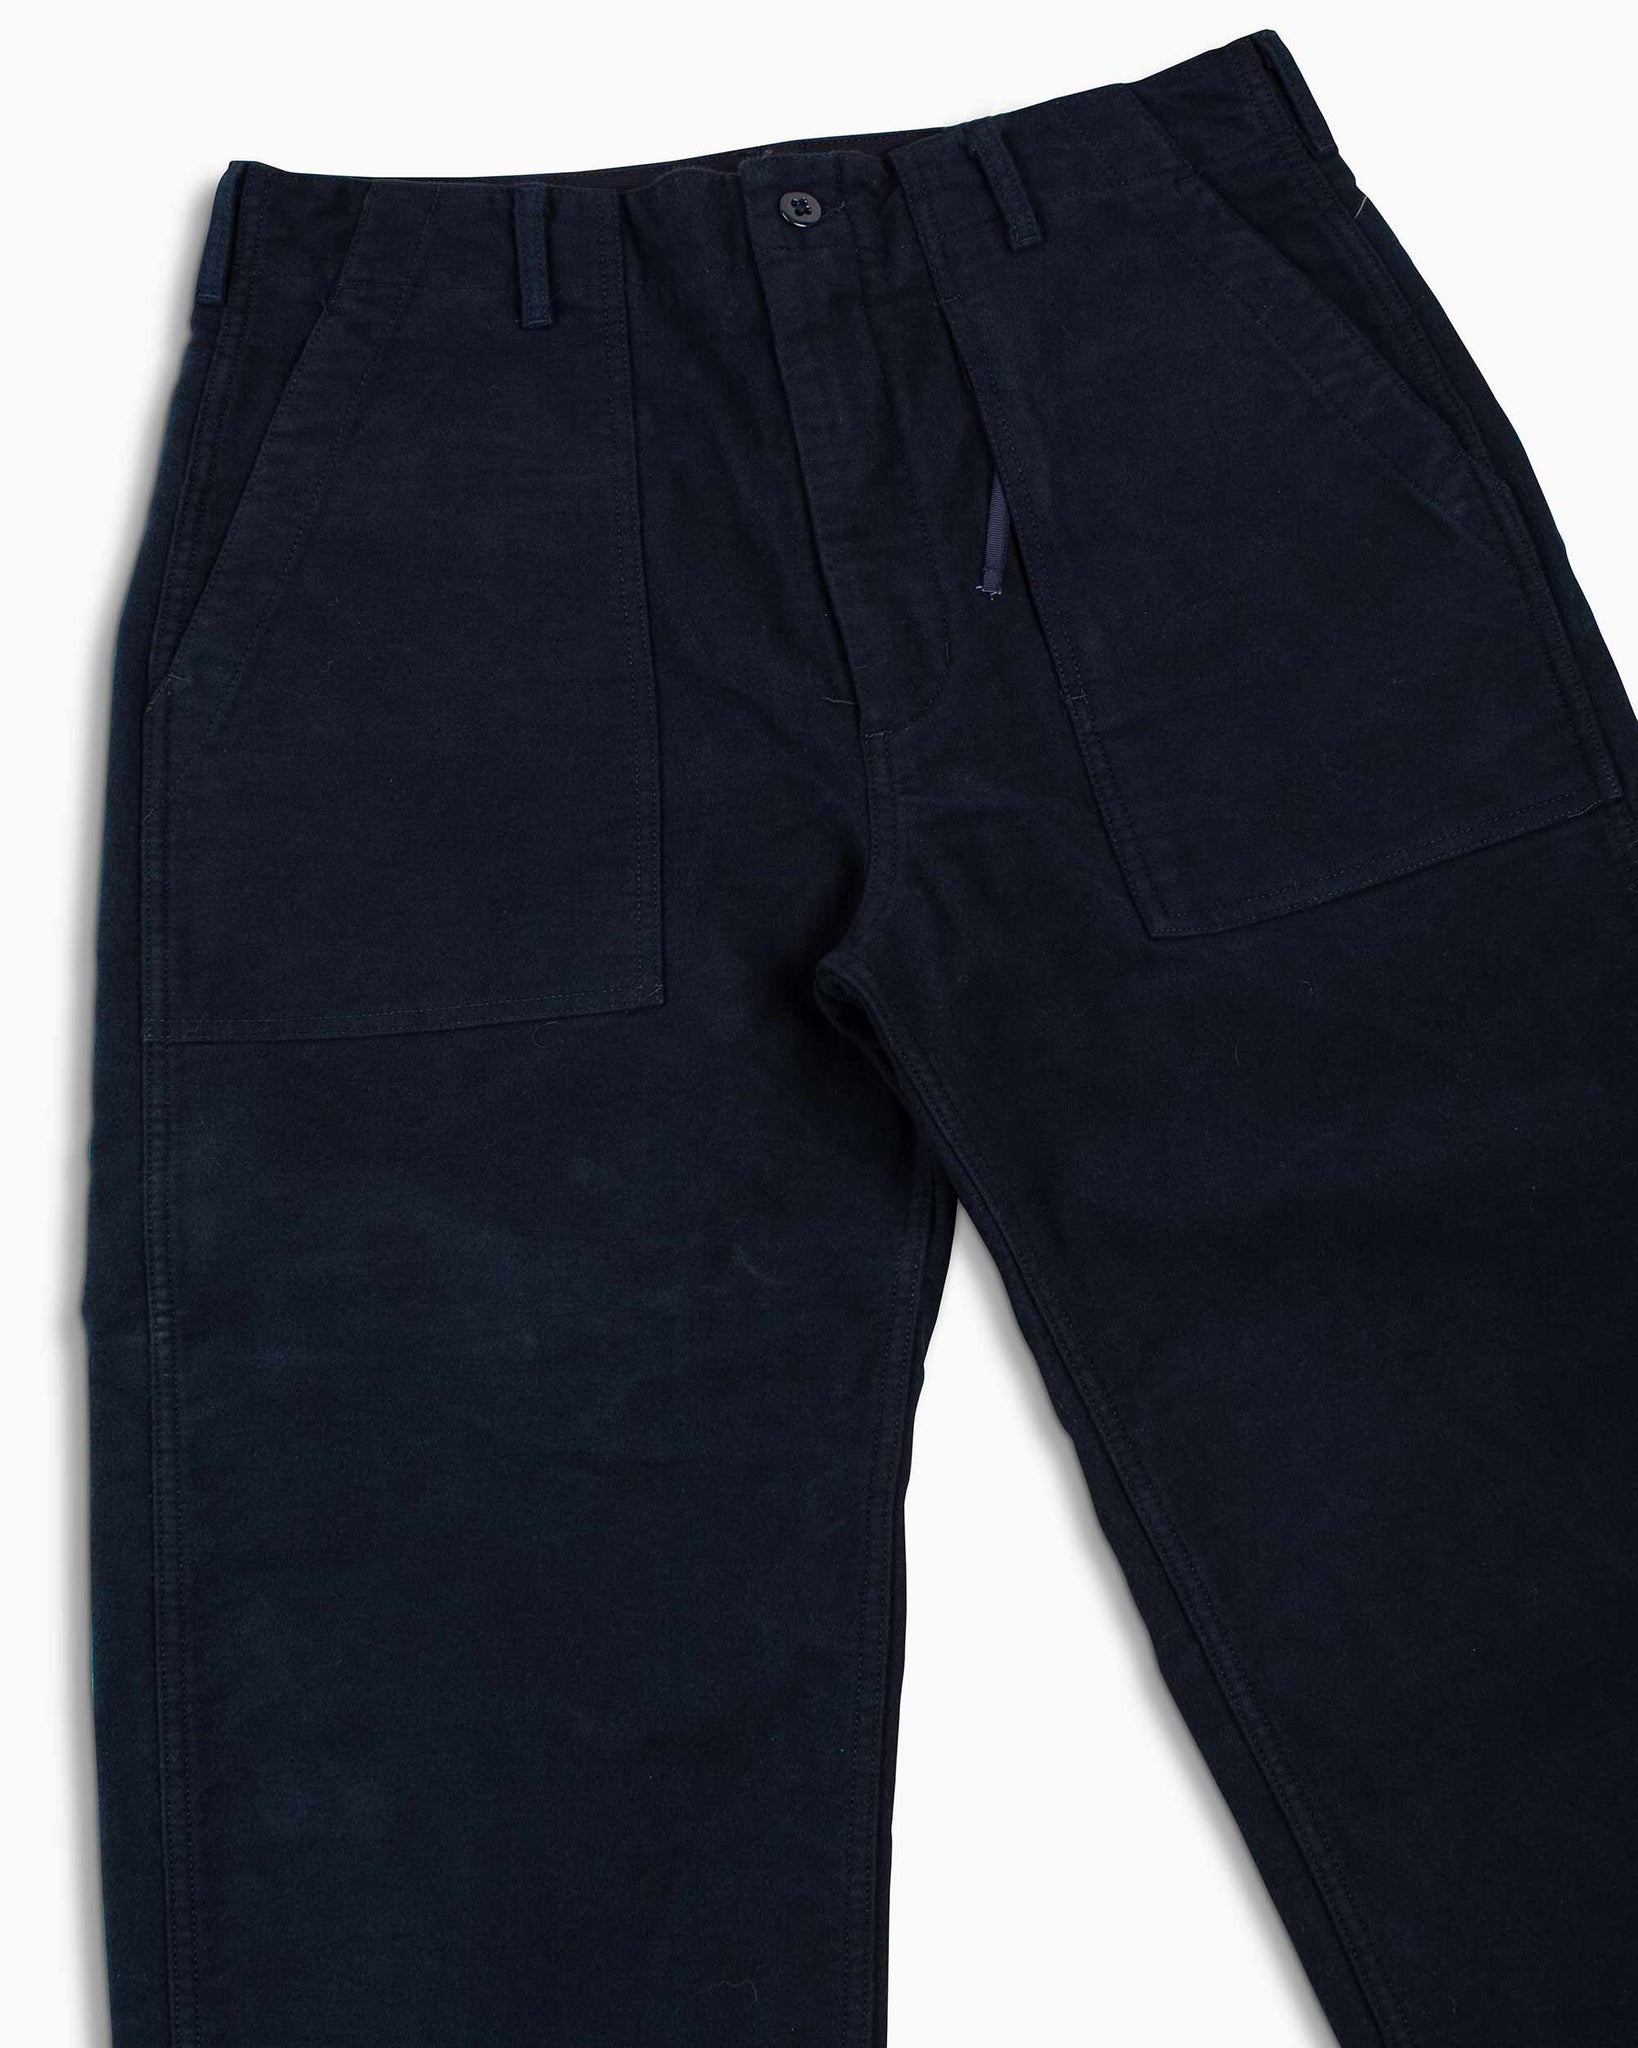 Engineered Garments Fatigue Pant Dark Navy Cotton Moleskin Details